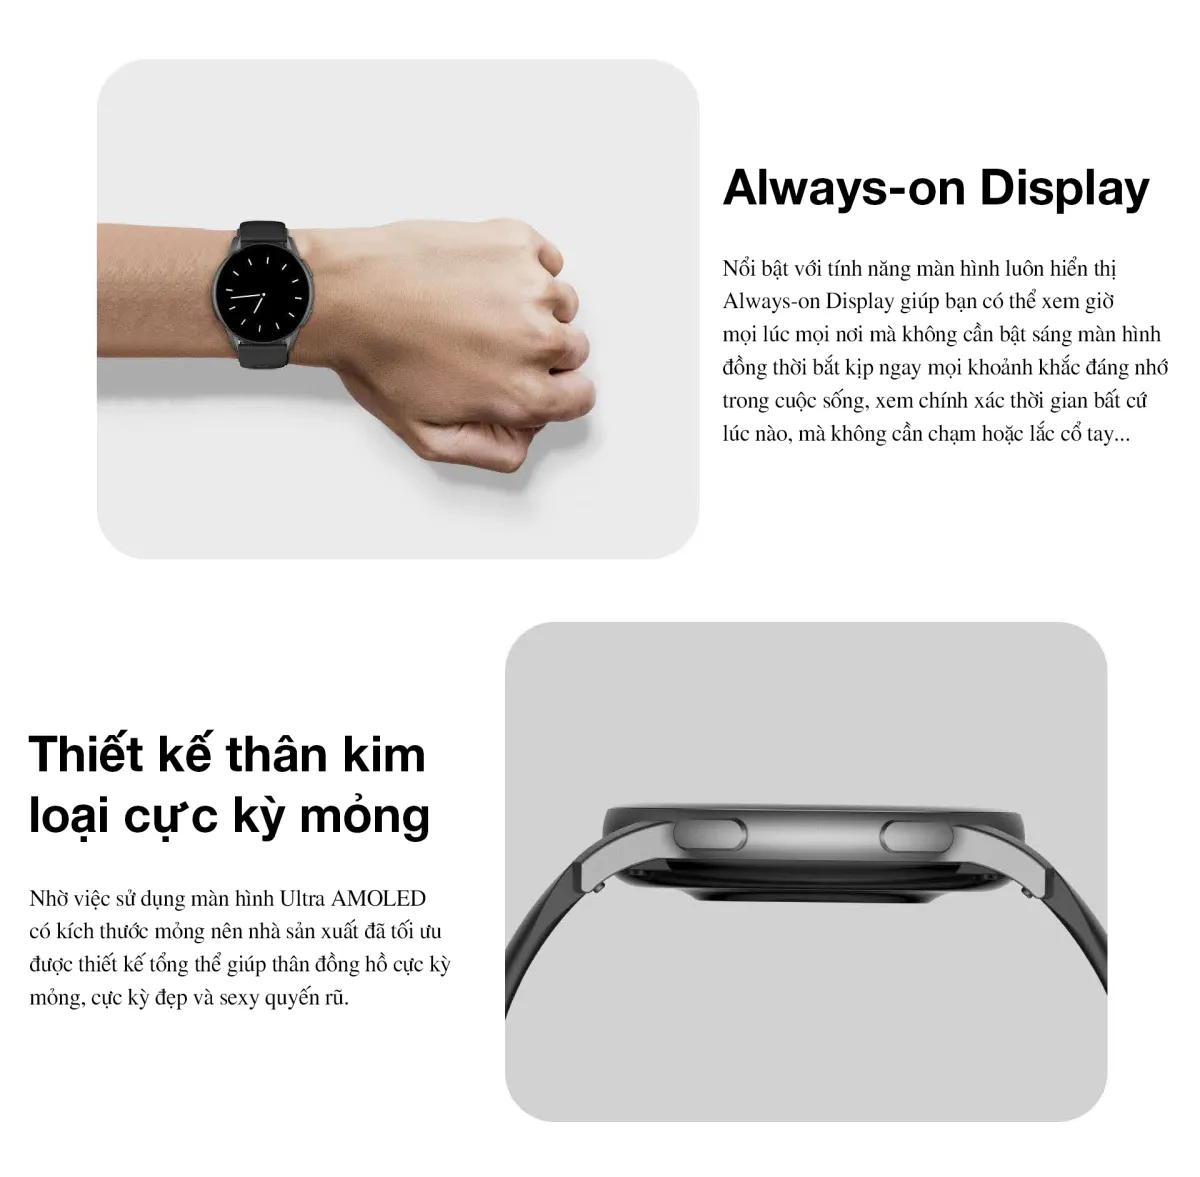 Với tính năng đa dạng và thiết kế sang trọng, chiếc đồng hồ K11 sẽ là người bạn đồng hành hoàn hảo cho mọi hoạt động của bạn.